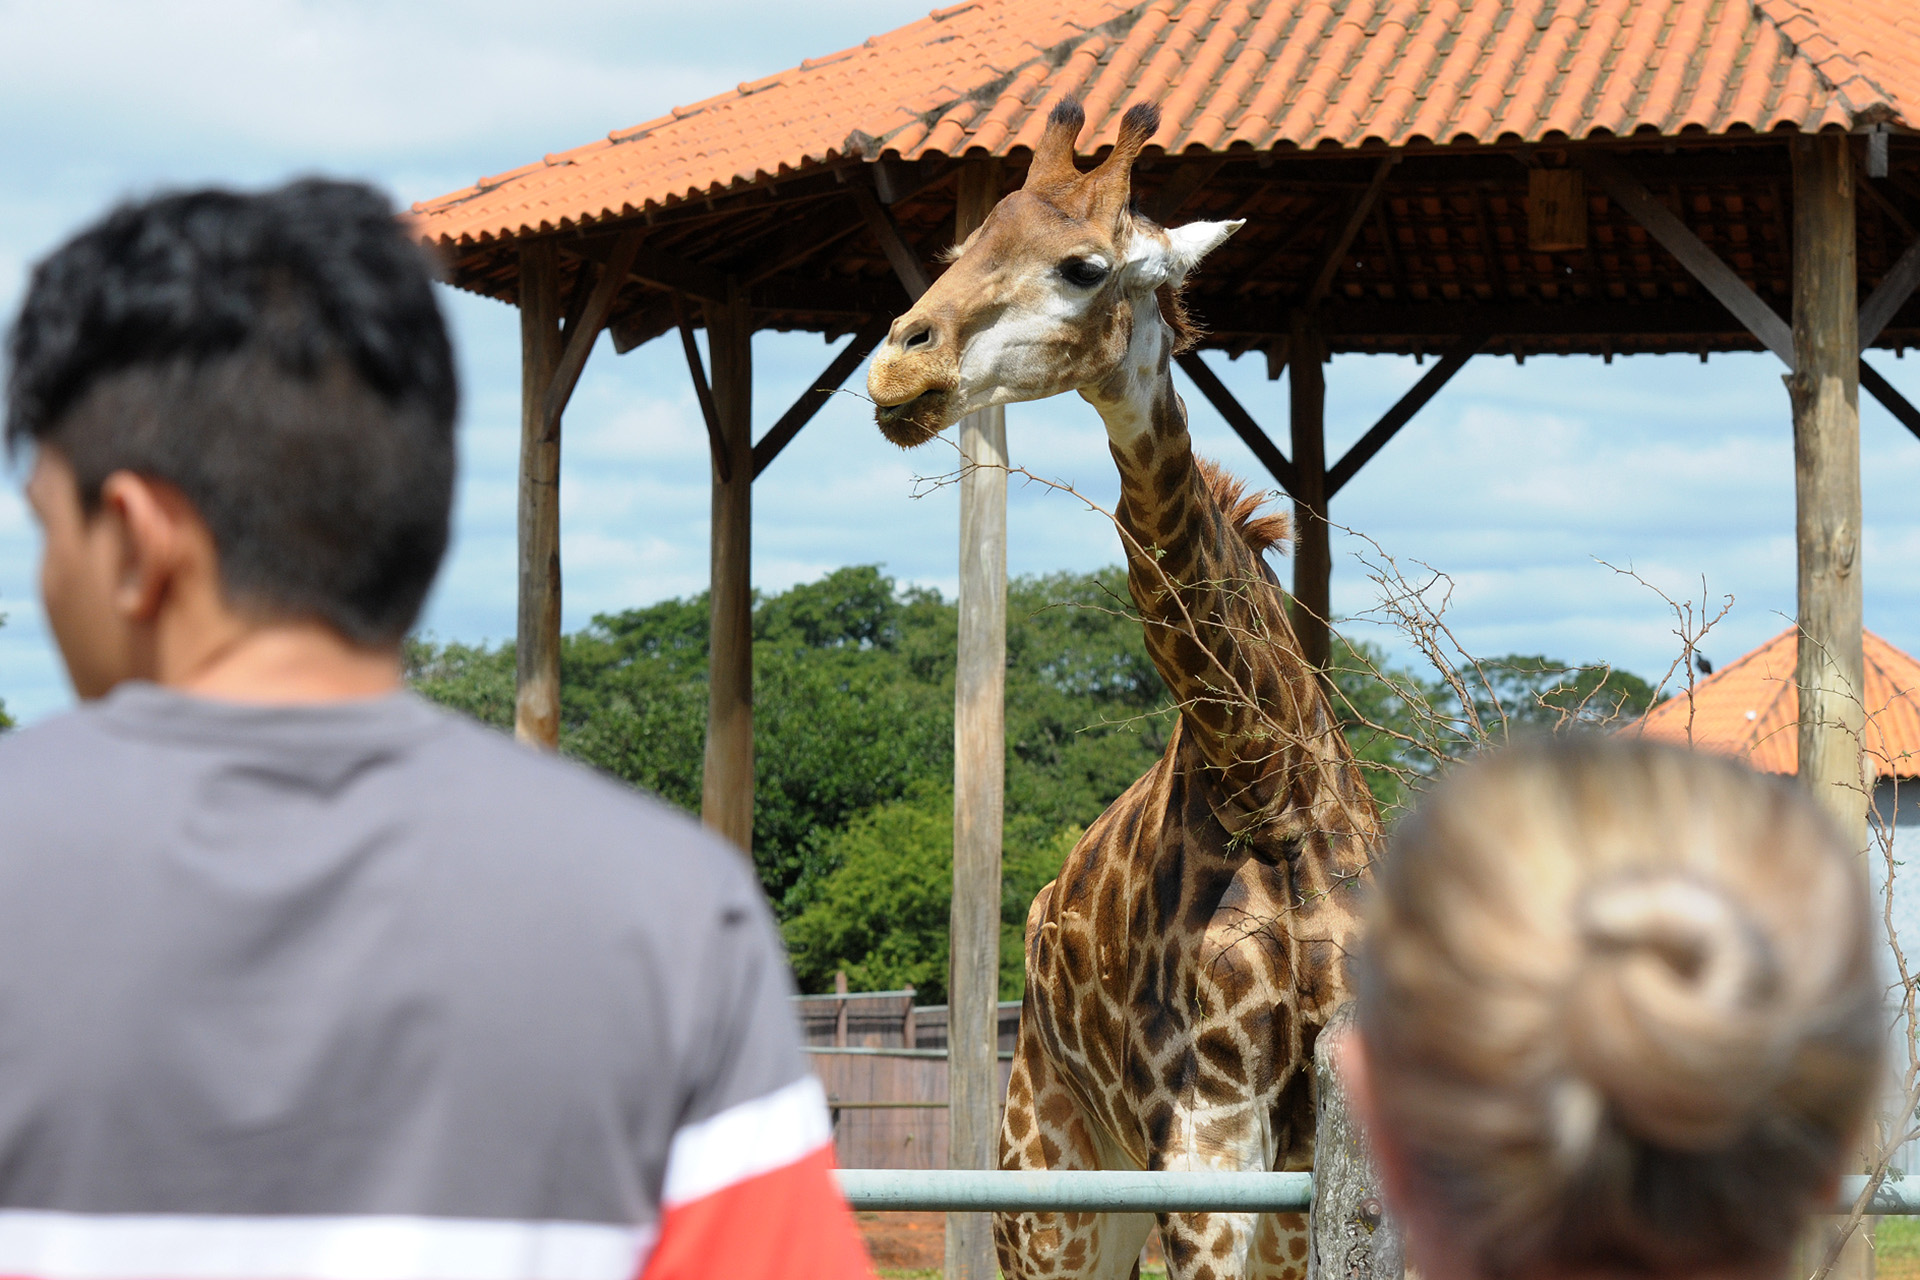 O Zoológico de Brasília funciona nesta quarta-feira (12) das 9h às 17h.